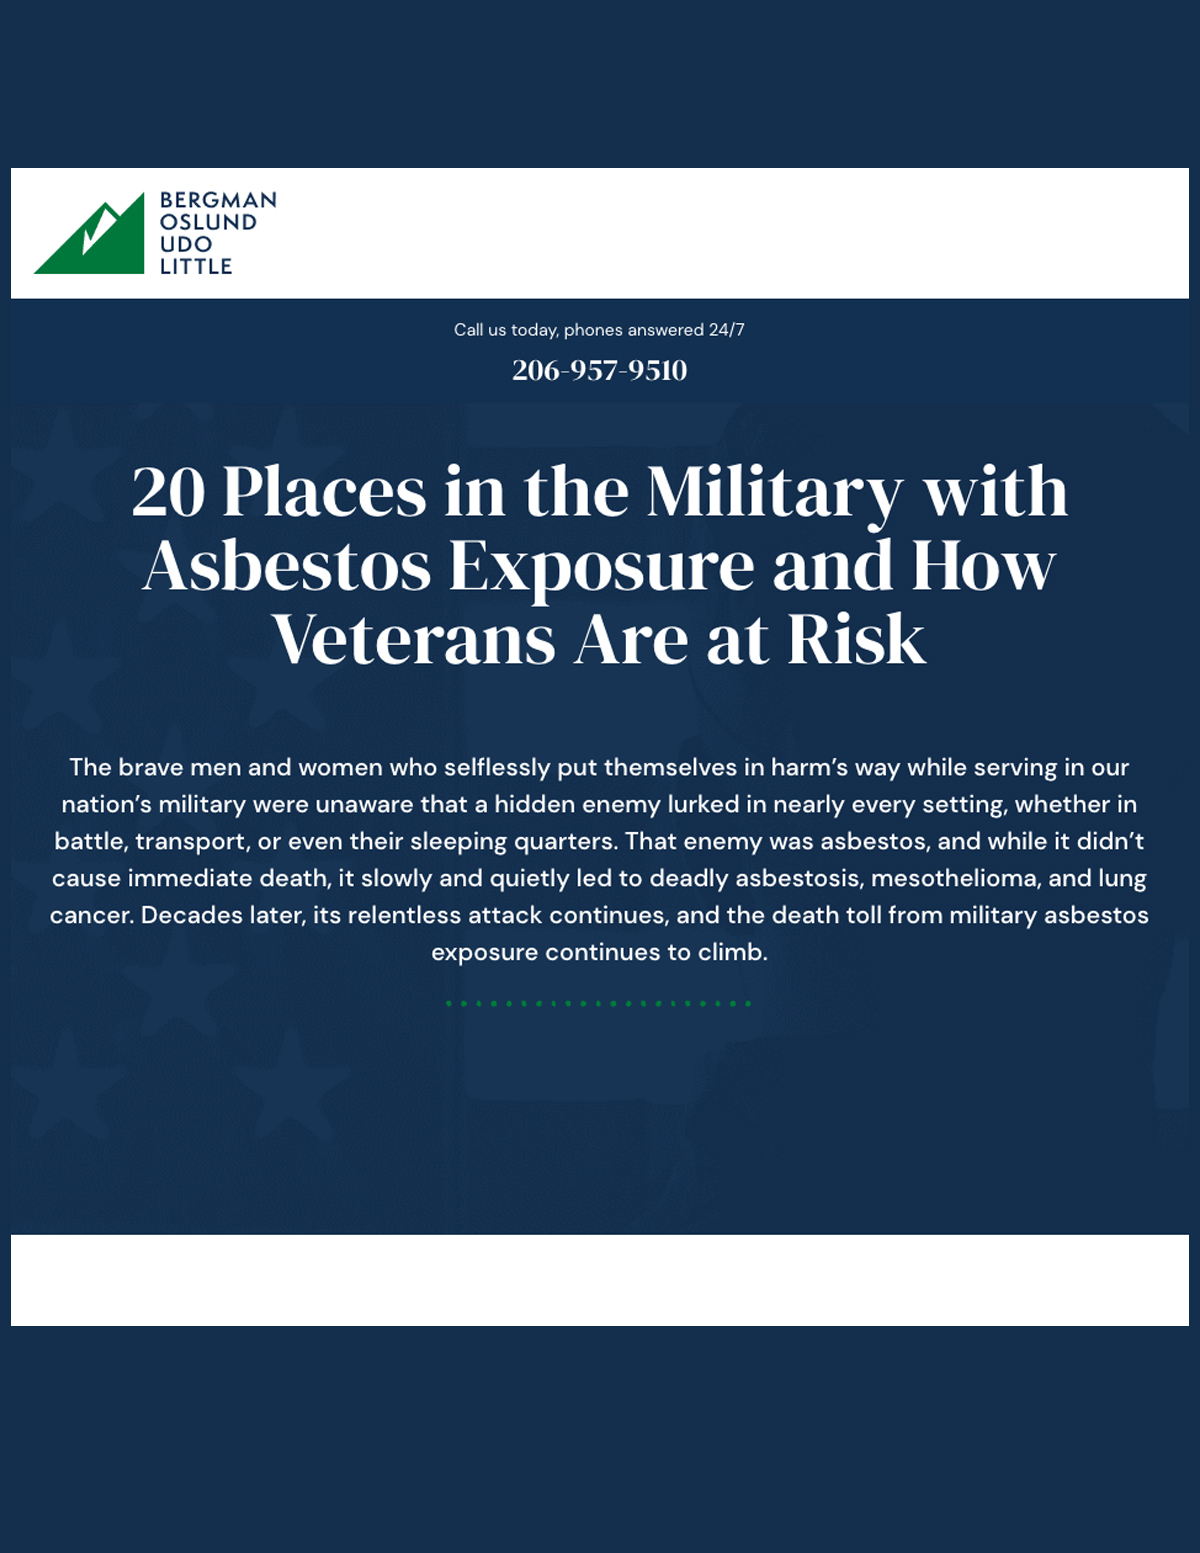 Veteran resource for asbestos exposure